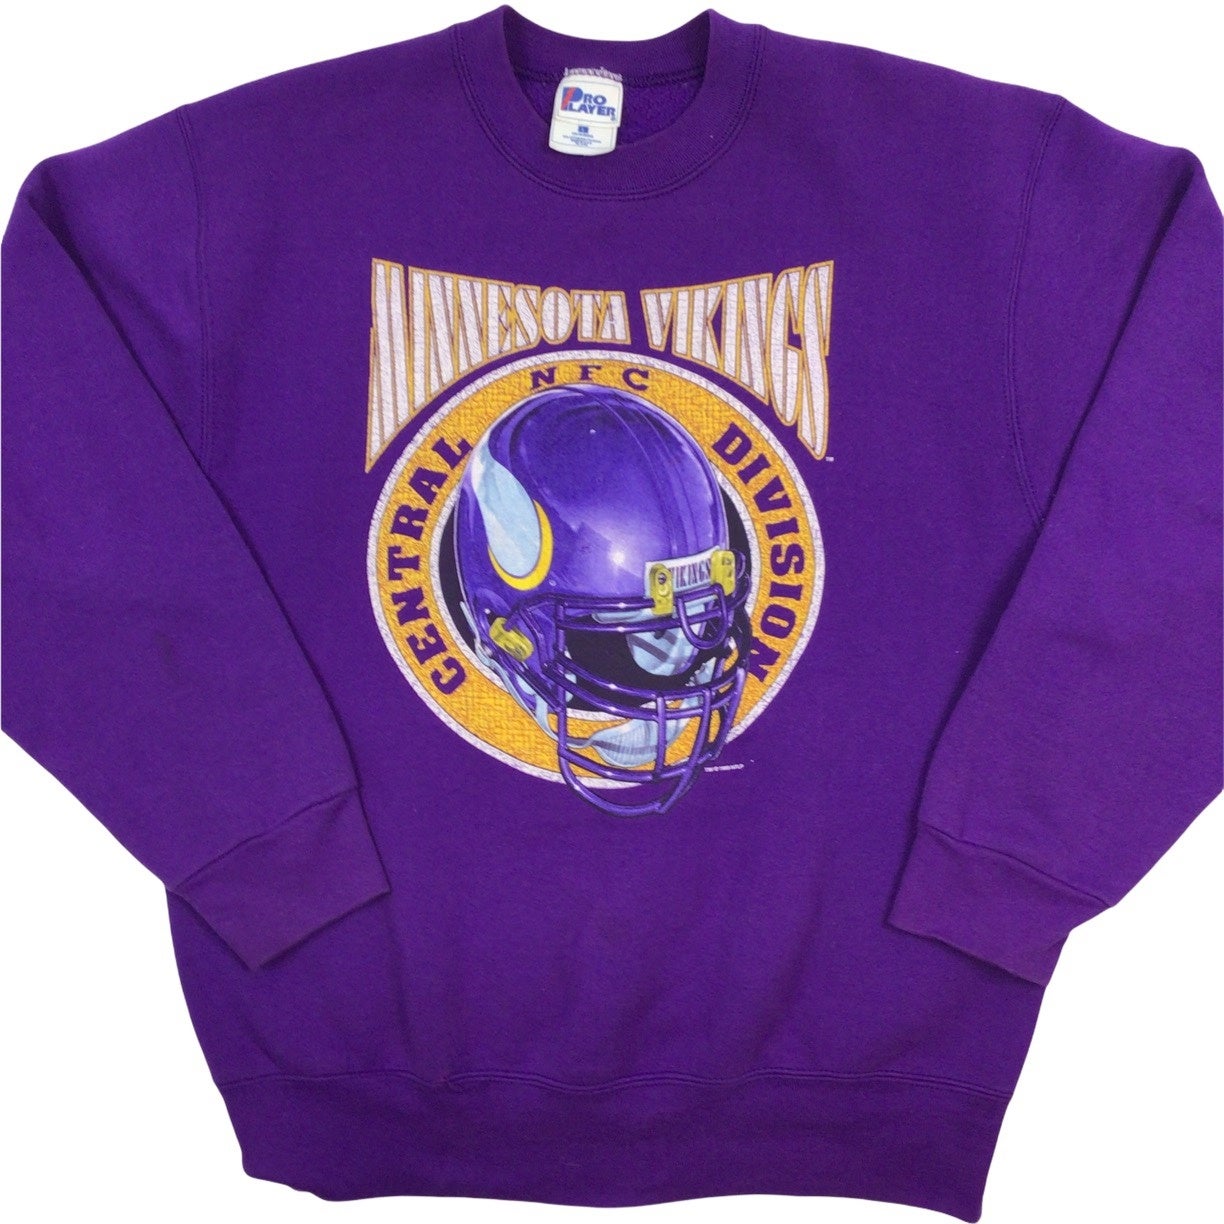 Vintage NFL Minnesota Vikings crewneck sweatshirt. Made in the USA